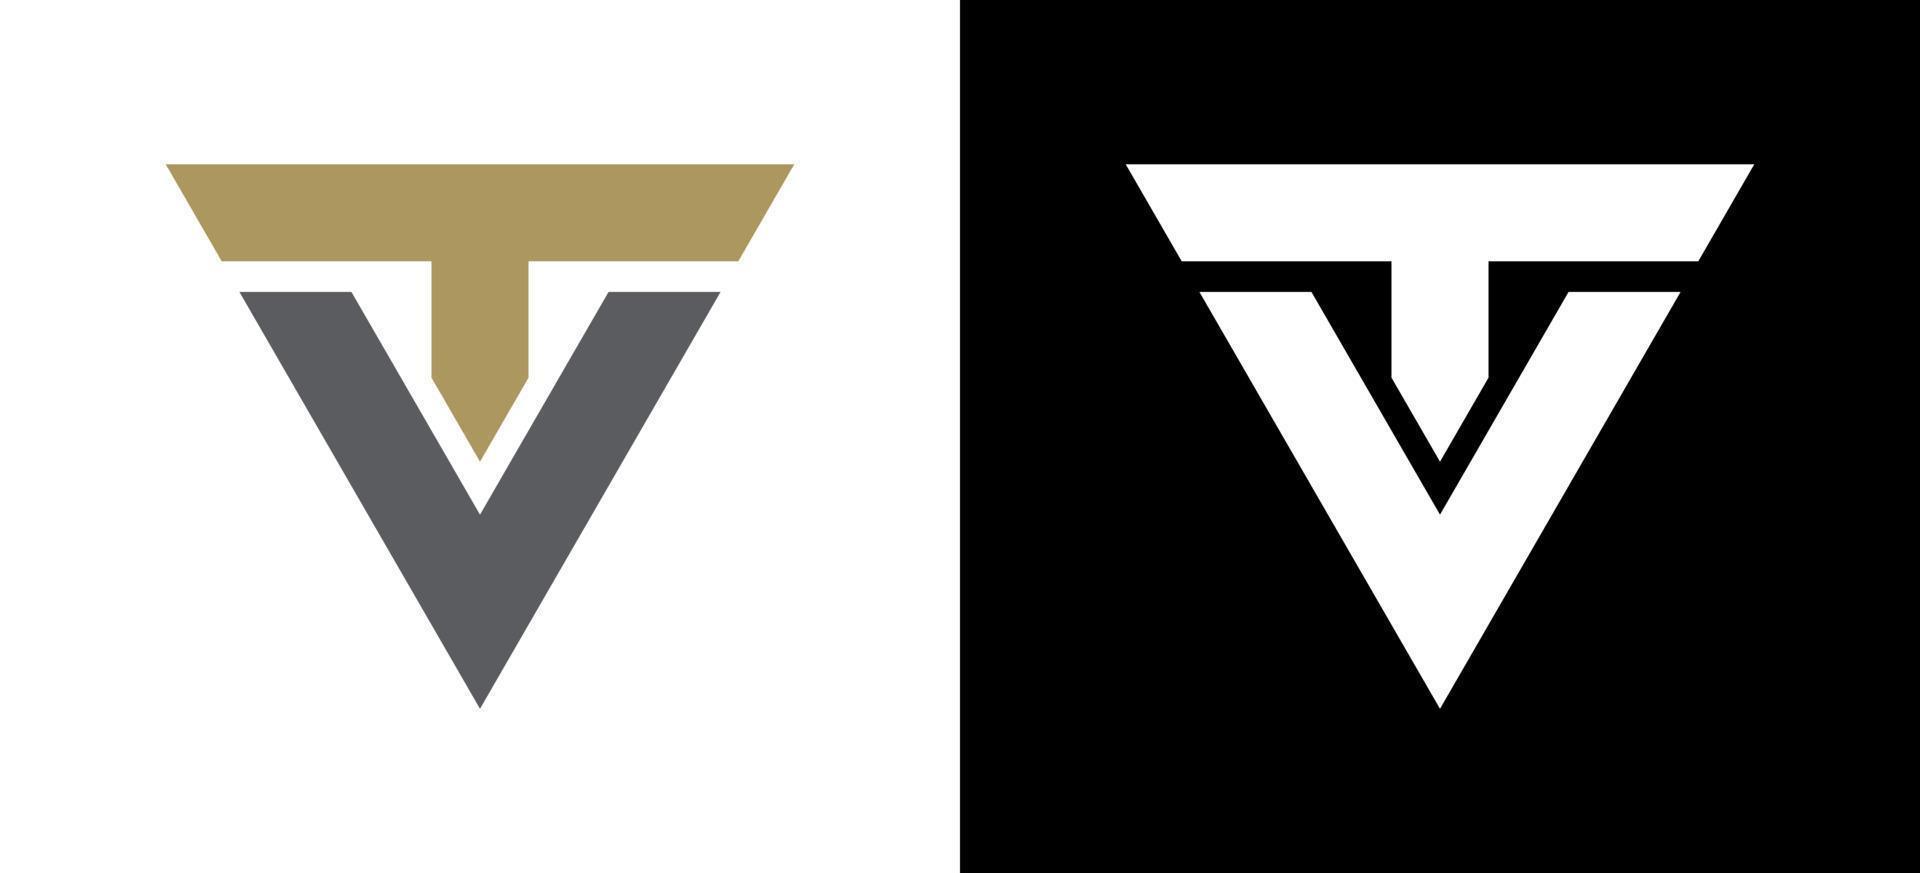 diseño de logotipo de tv de letra inicial vector